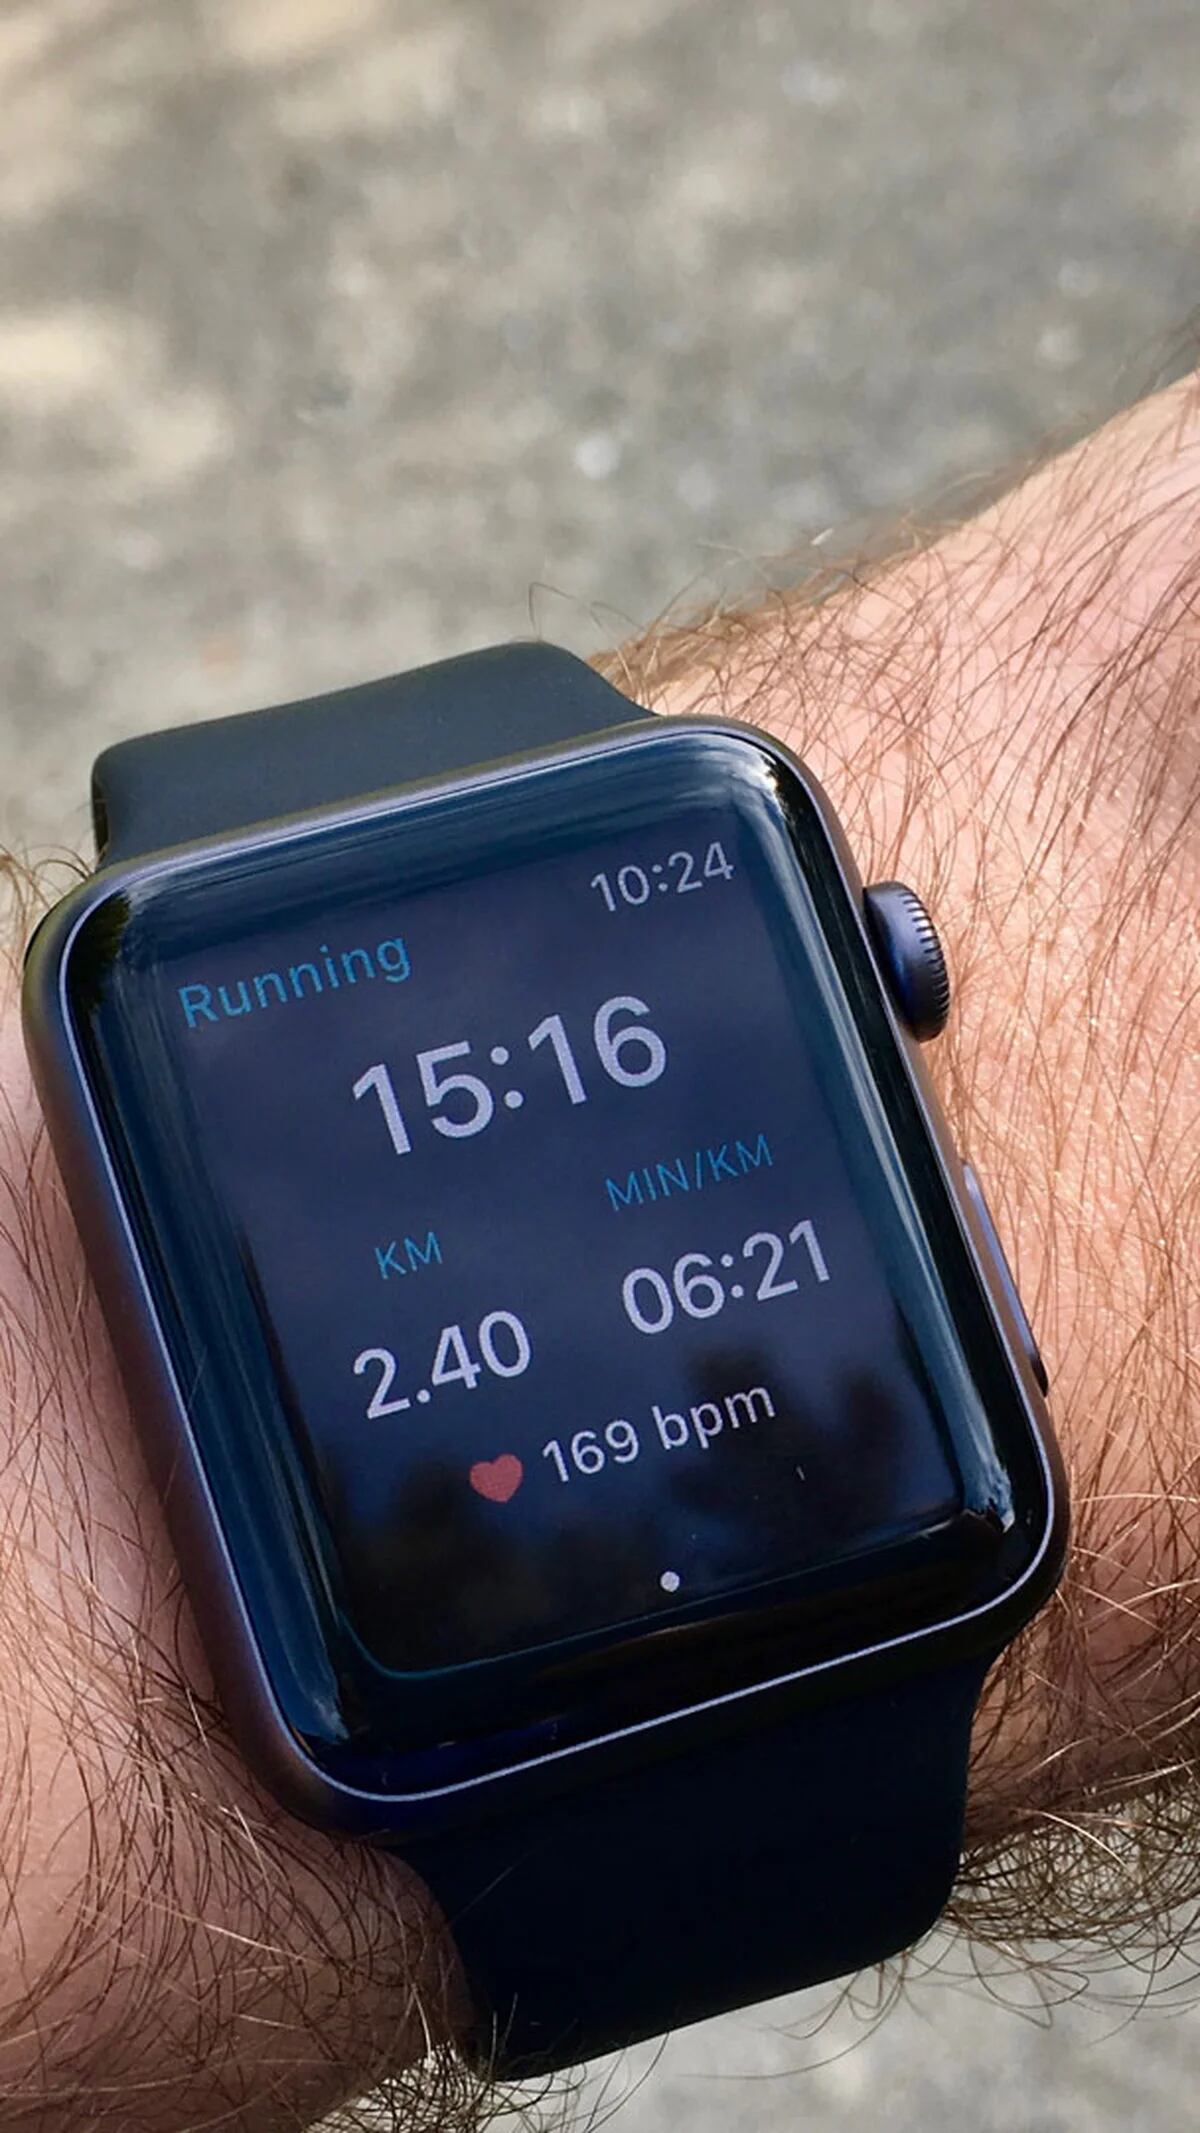 Atención, diabéticos: el Apple Watch tendrá un monitor que medirá